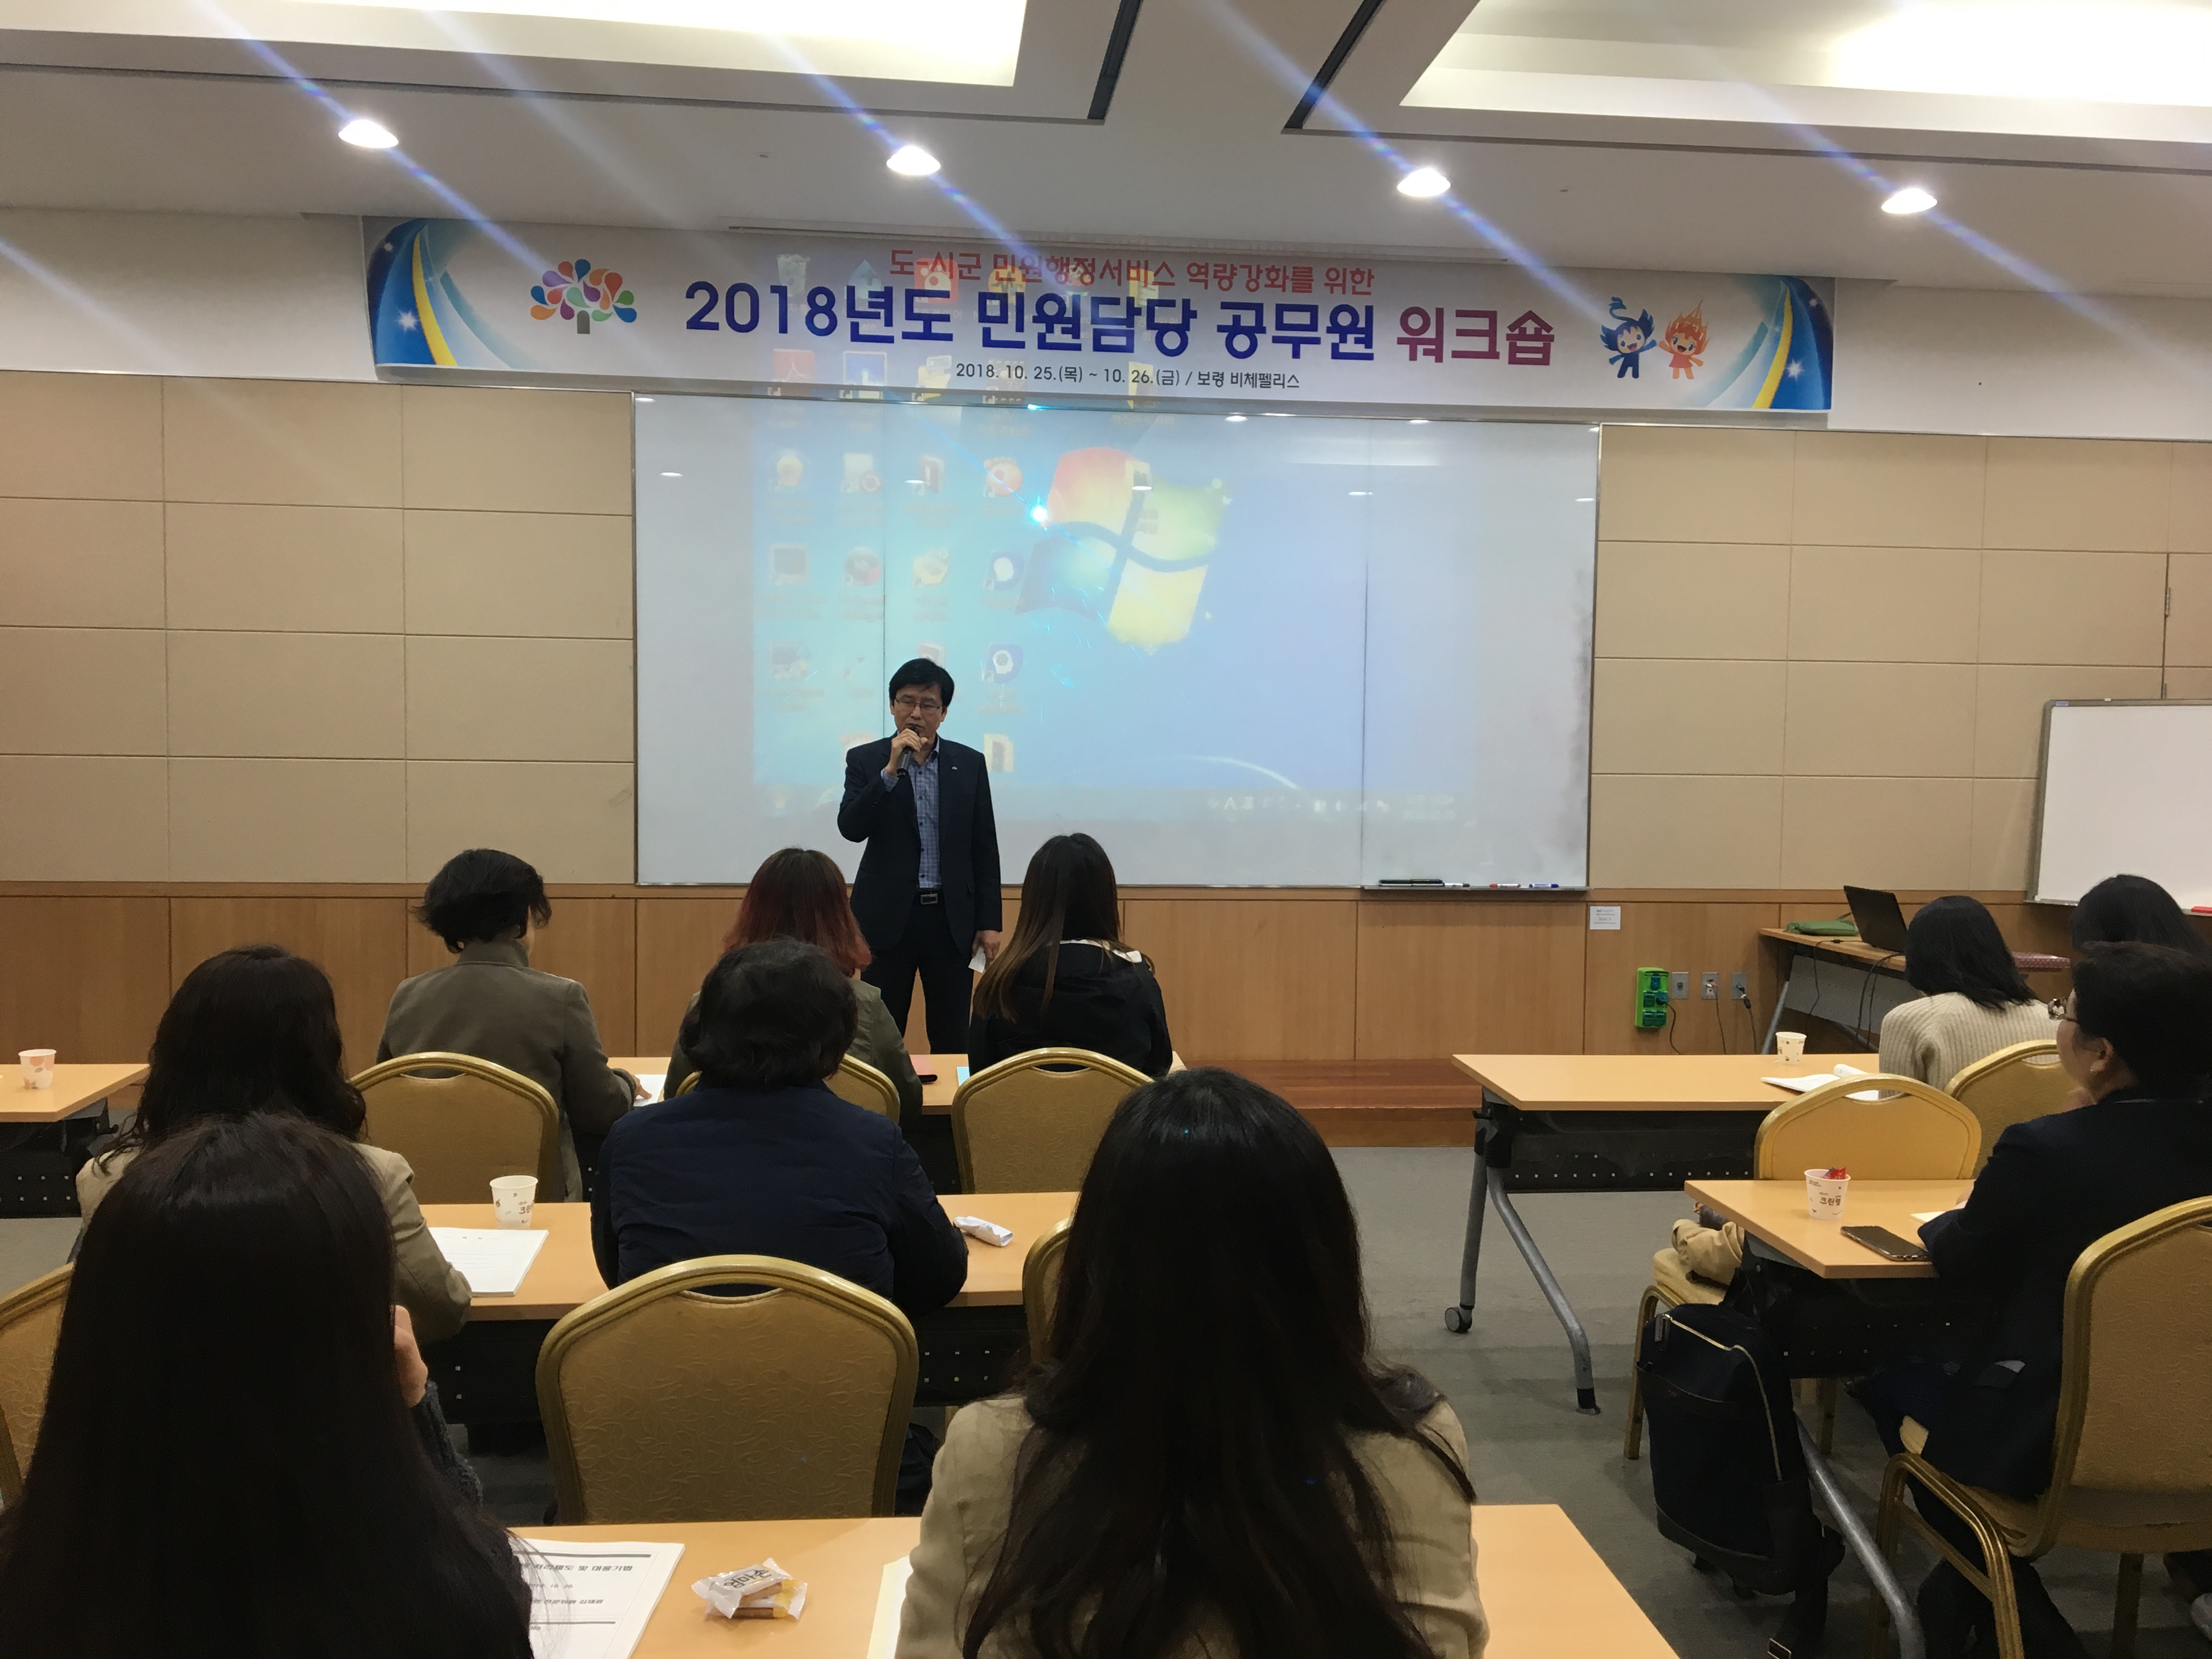 “민원행정서비스 역량강화를 위한 워크숍 개최”